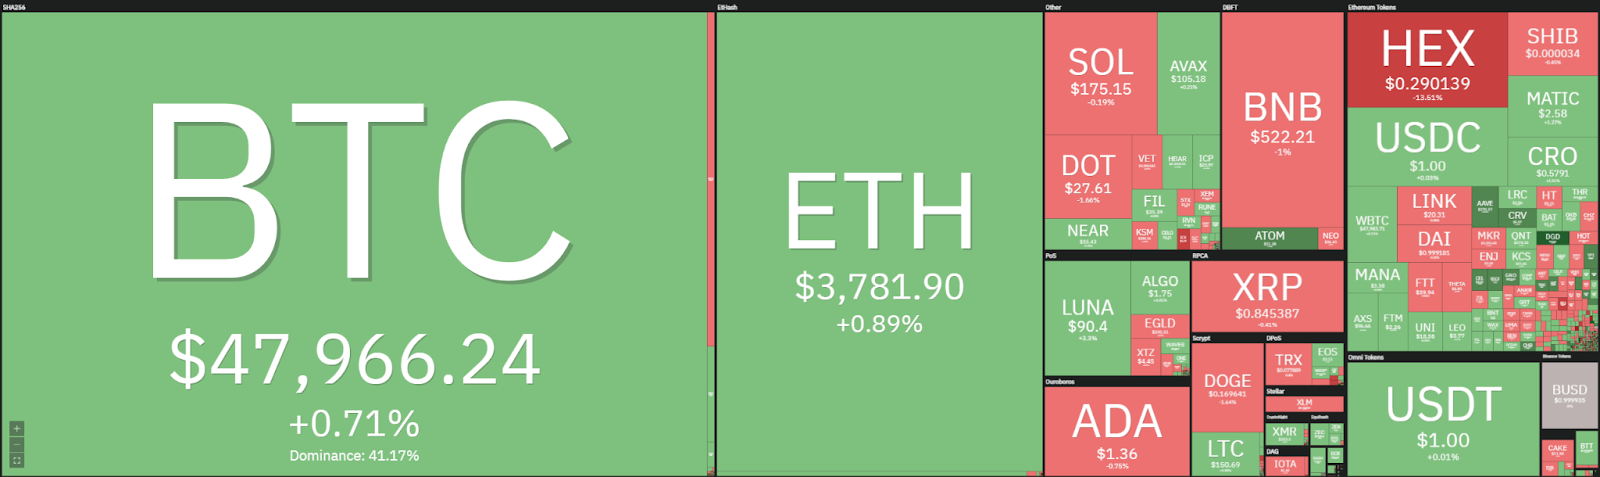 Análisis de precios de Ethereum: ETH aumenta por encima de los $ 3,800, ¿se rechaza más alza? 1